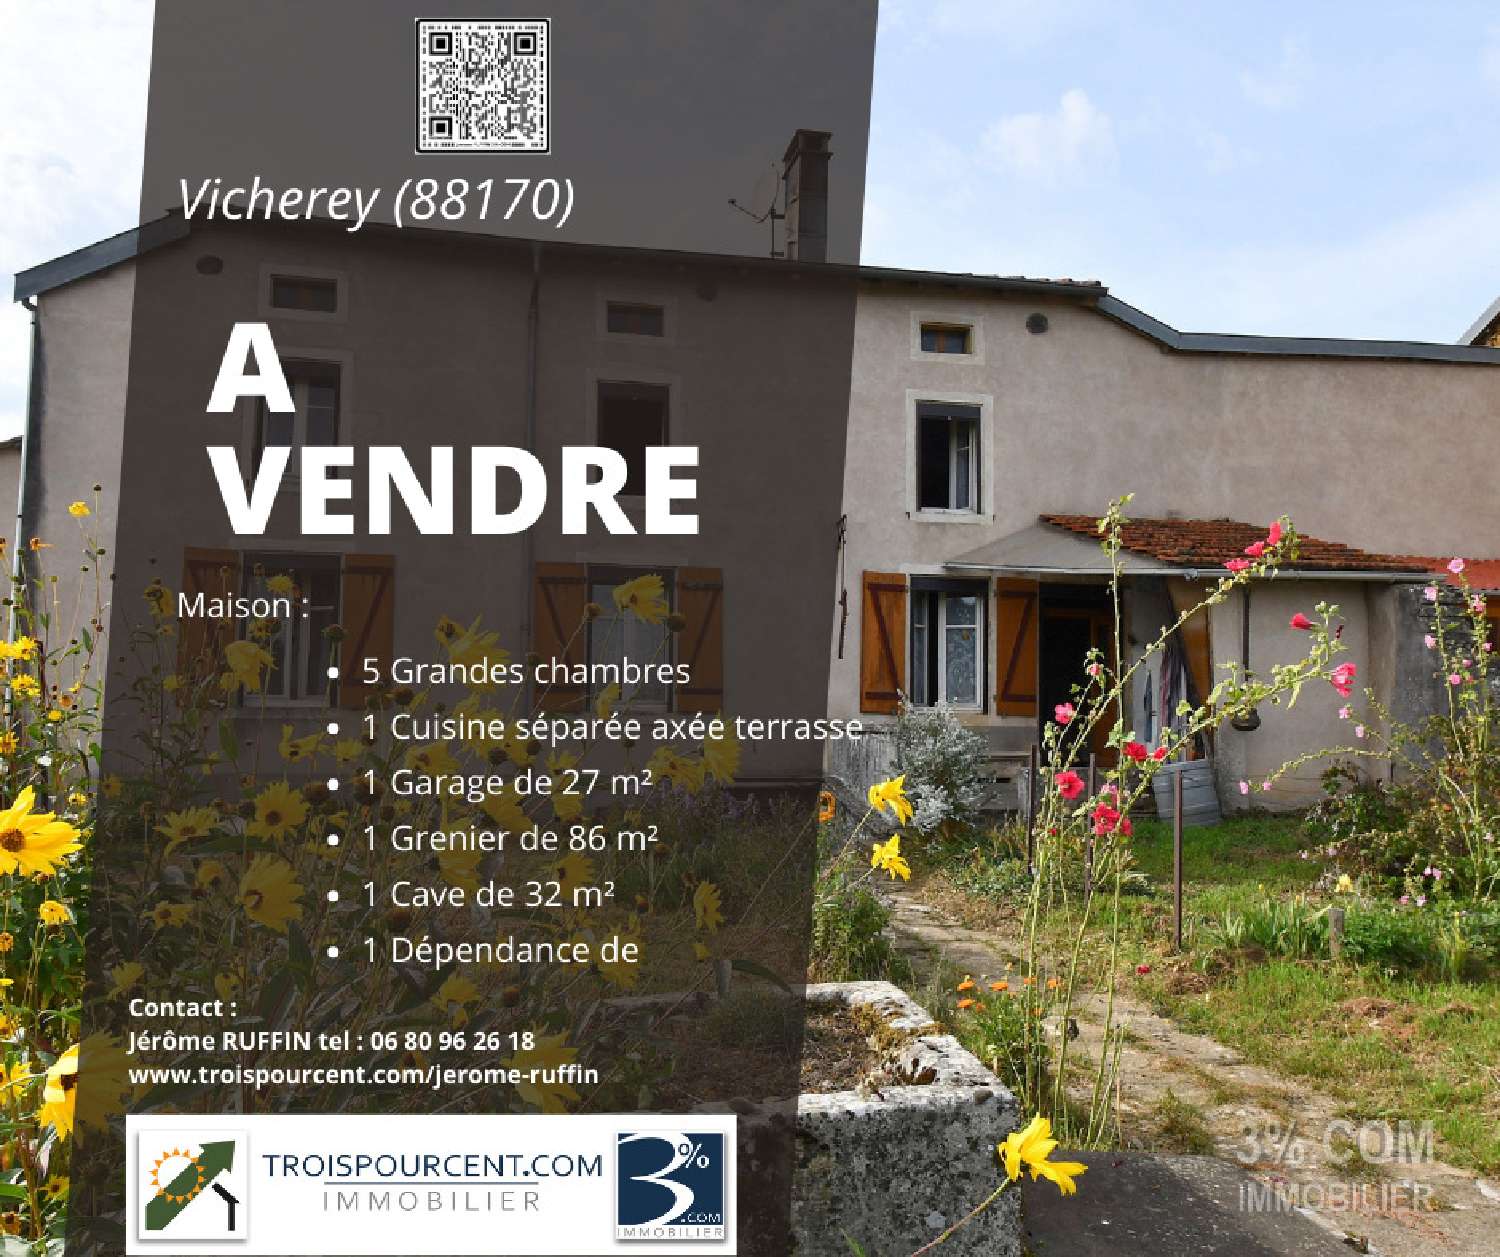 Vicherey Vosges maison de village foto 6826537